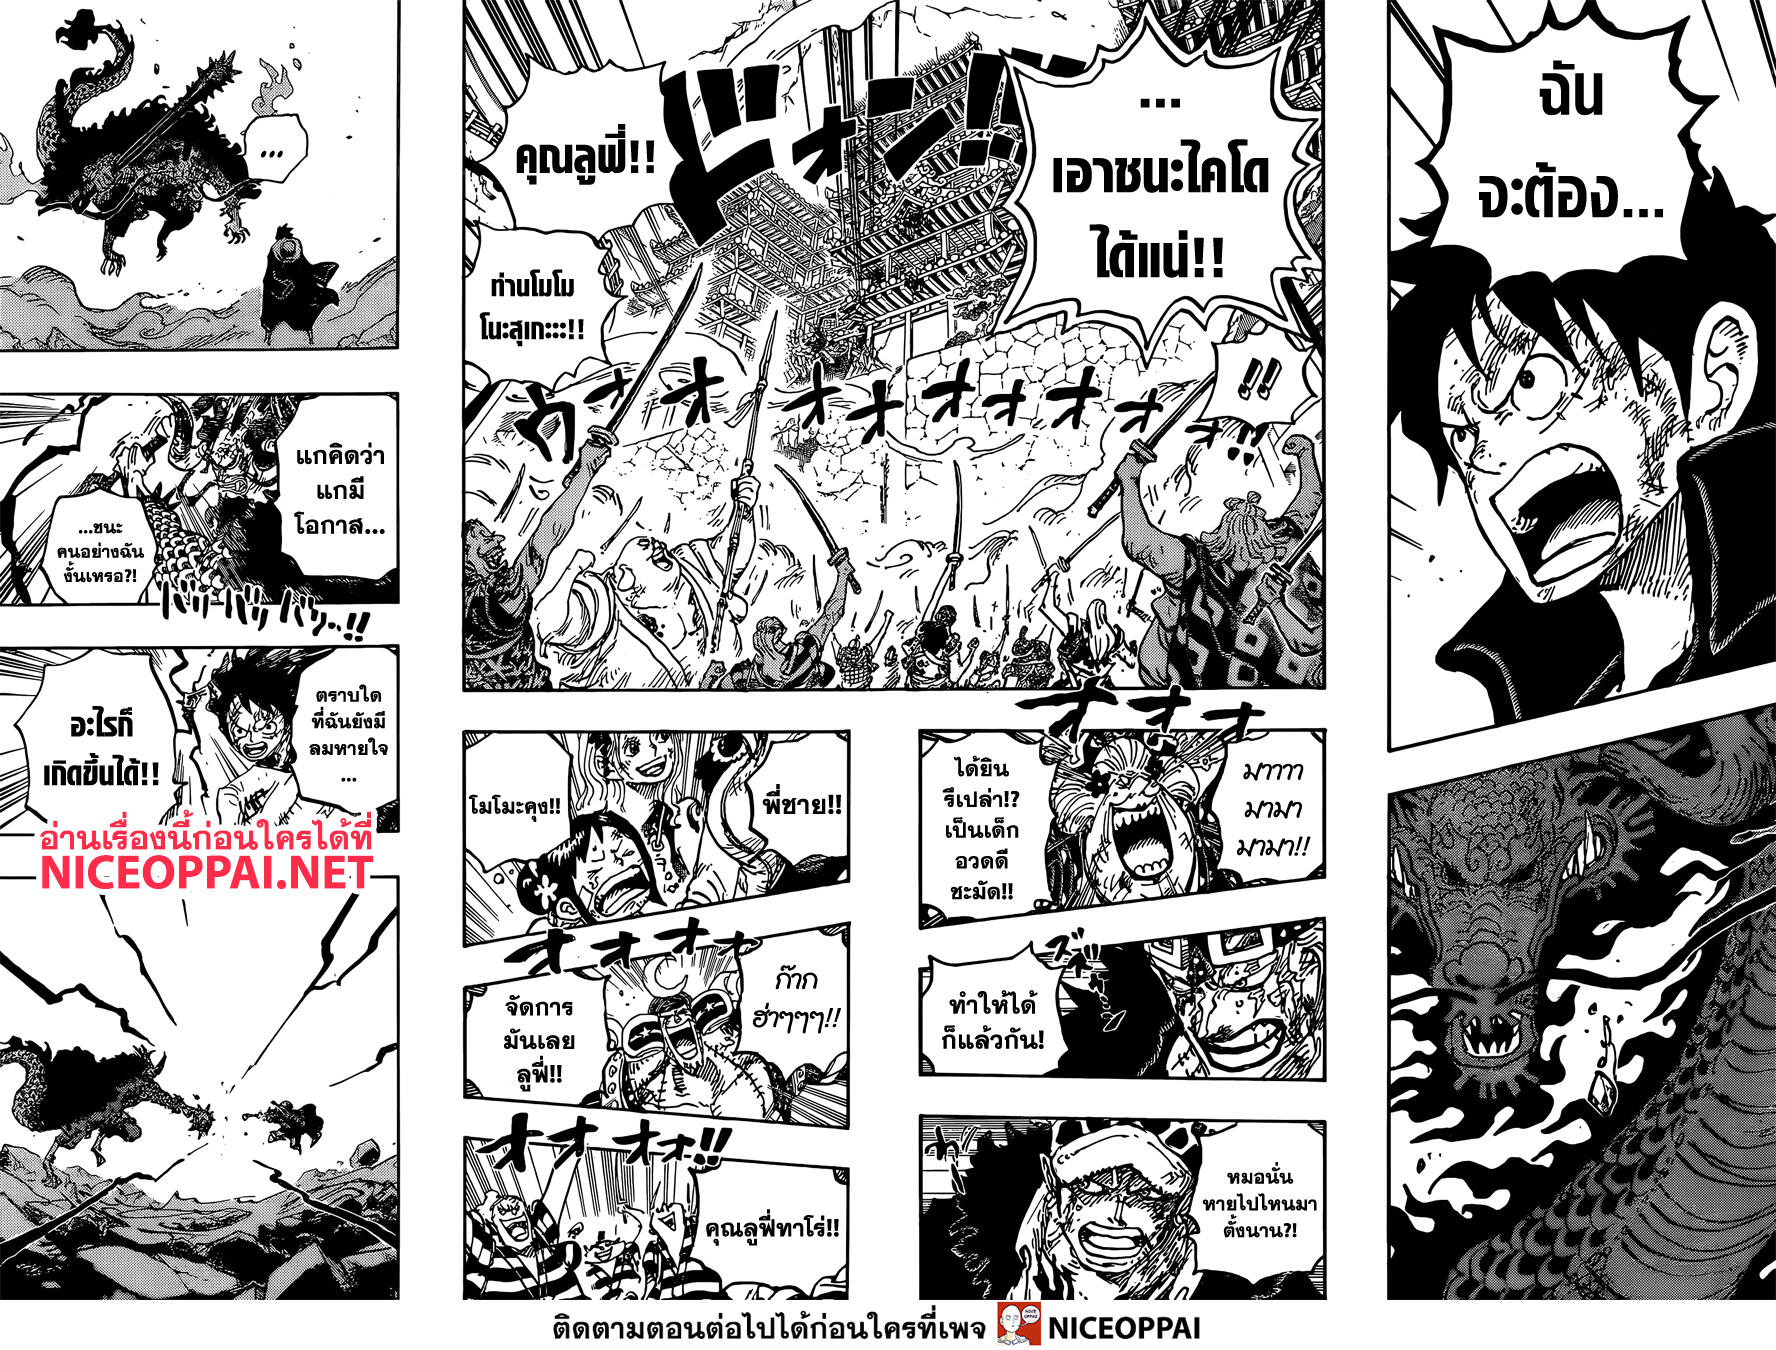 One Piece 1026-TH-เทนโนซัง: จุดพลิกชะตา